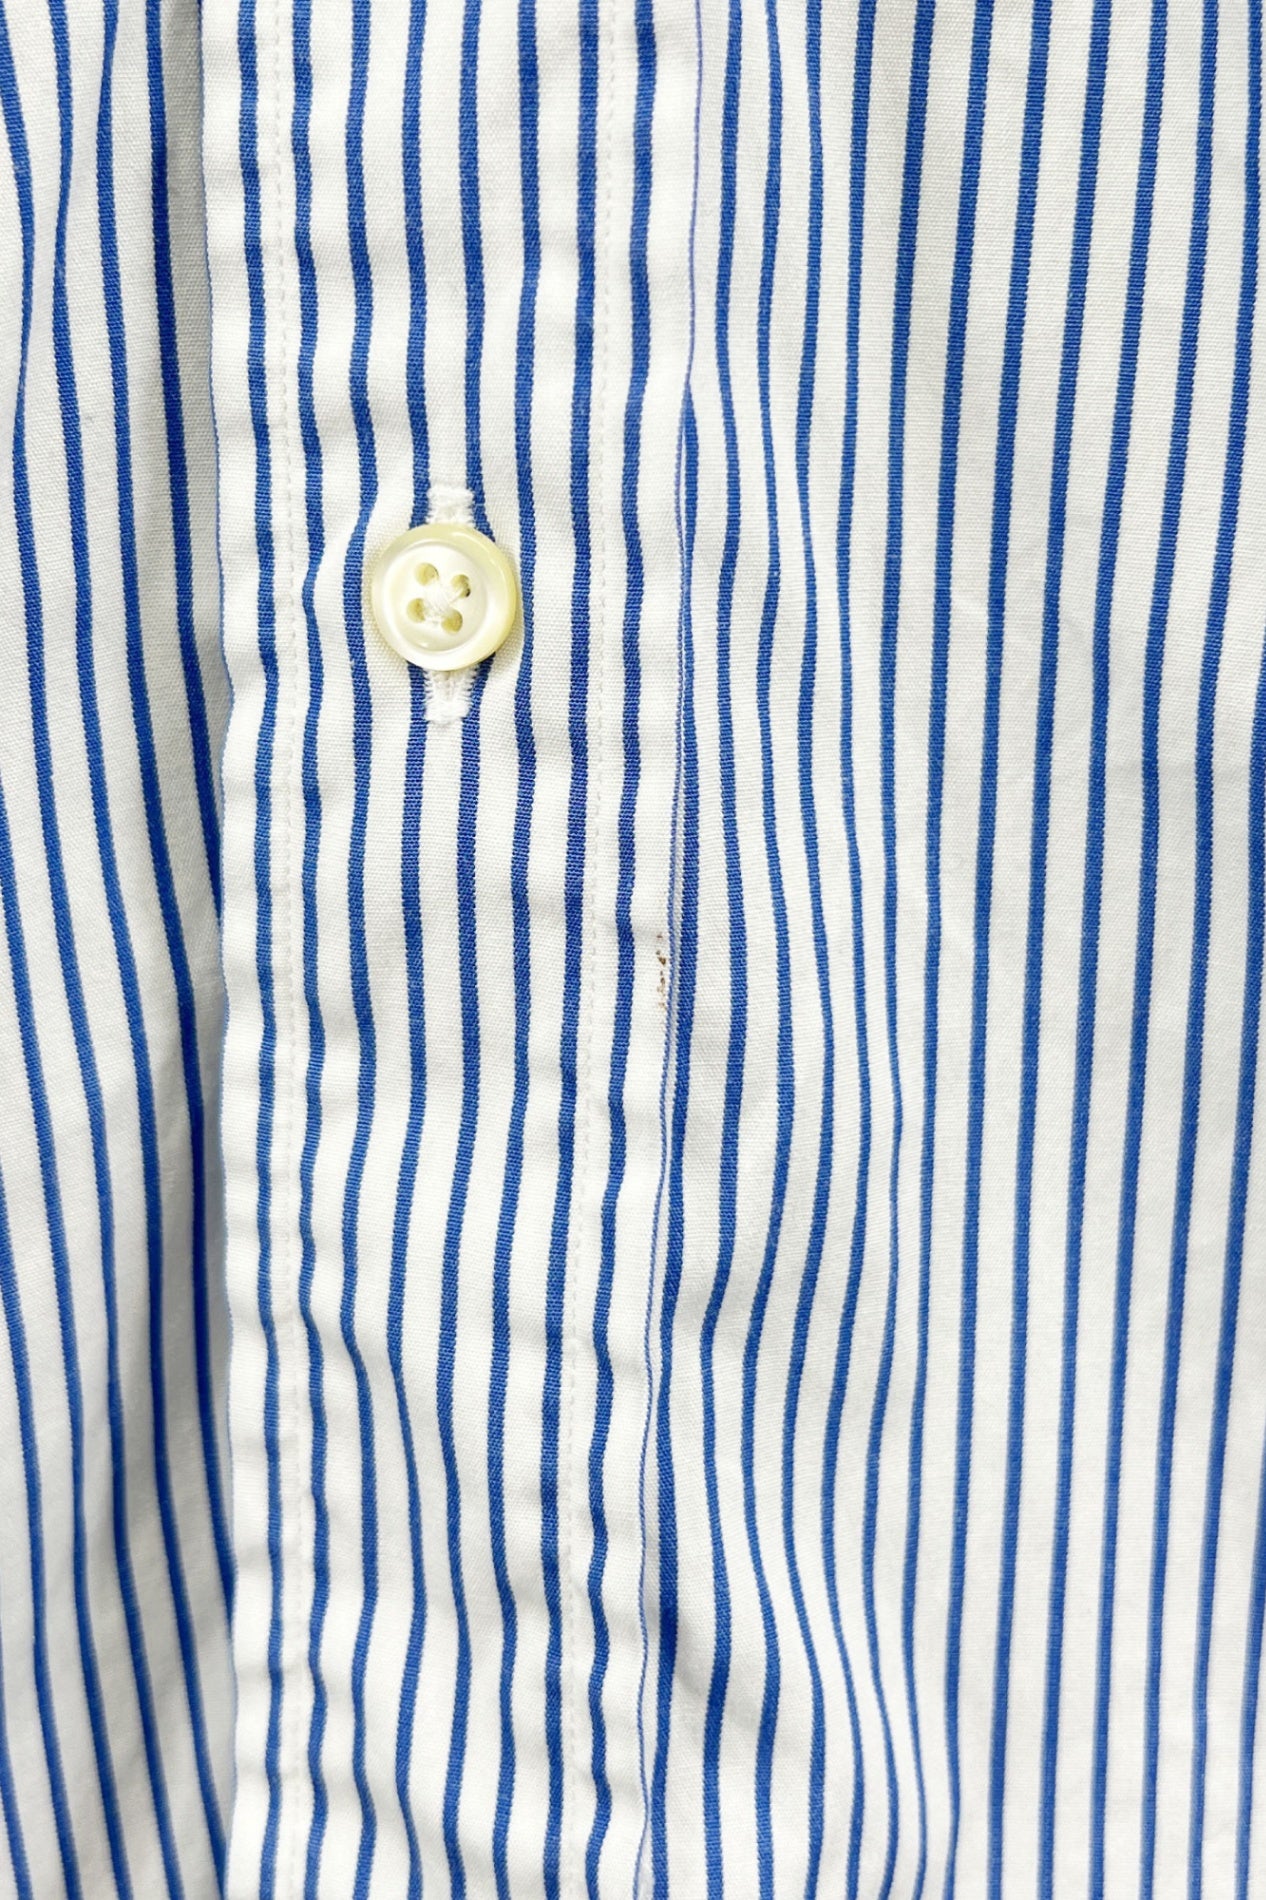 90's Ralph Lauren CUSTOM FIT blue stripe shirt